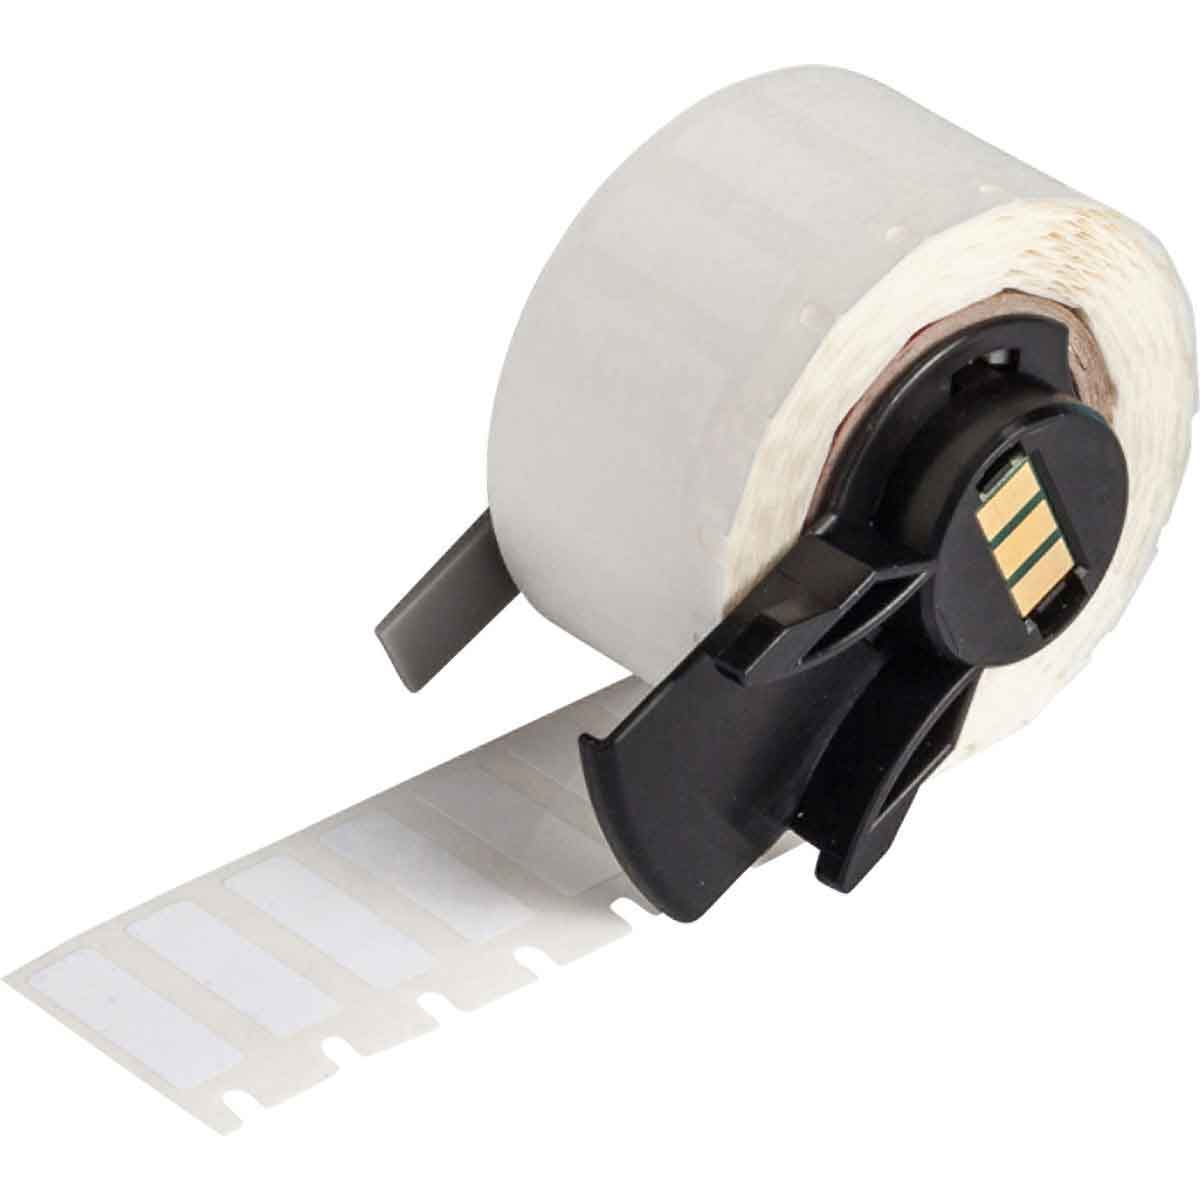 Étiquettes en tissu vinyle repositionnables pour fils et câbles pour étiqueteuses BMP61, M611 et TLS2200